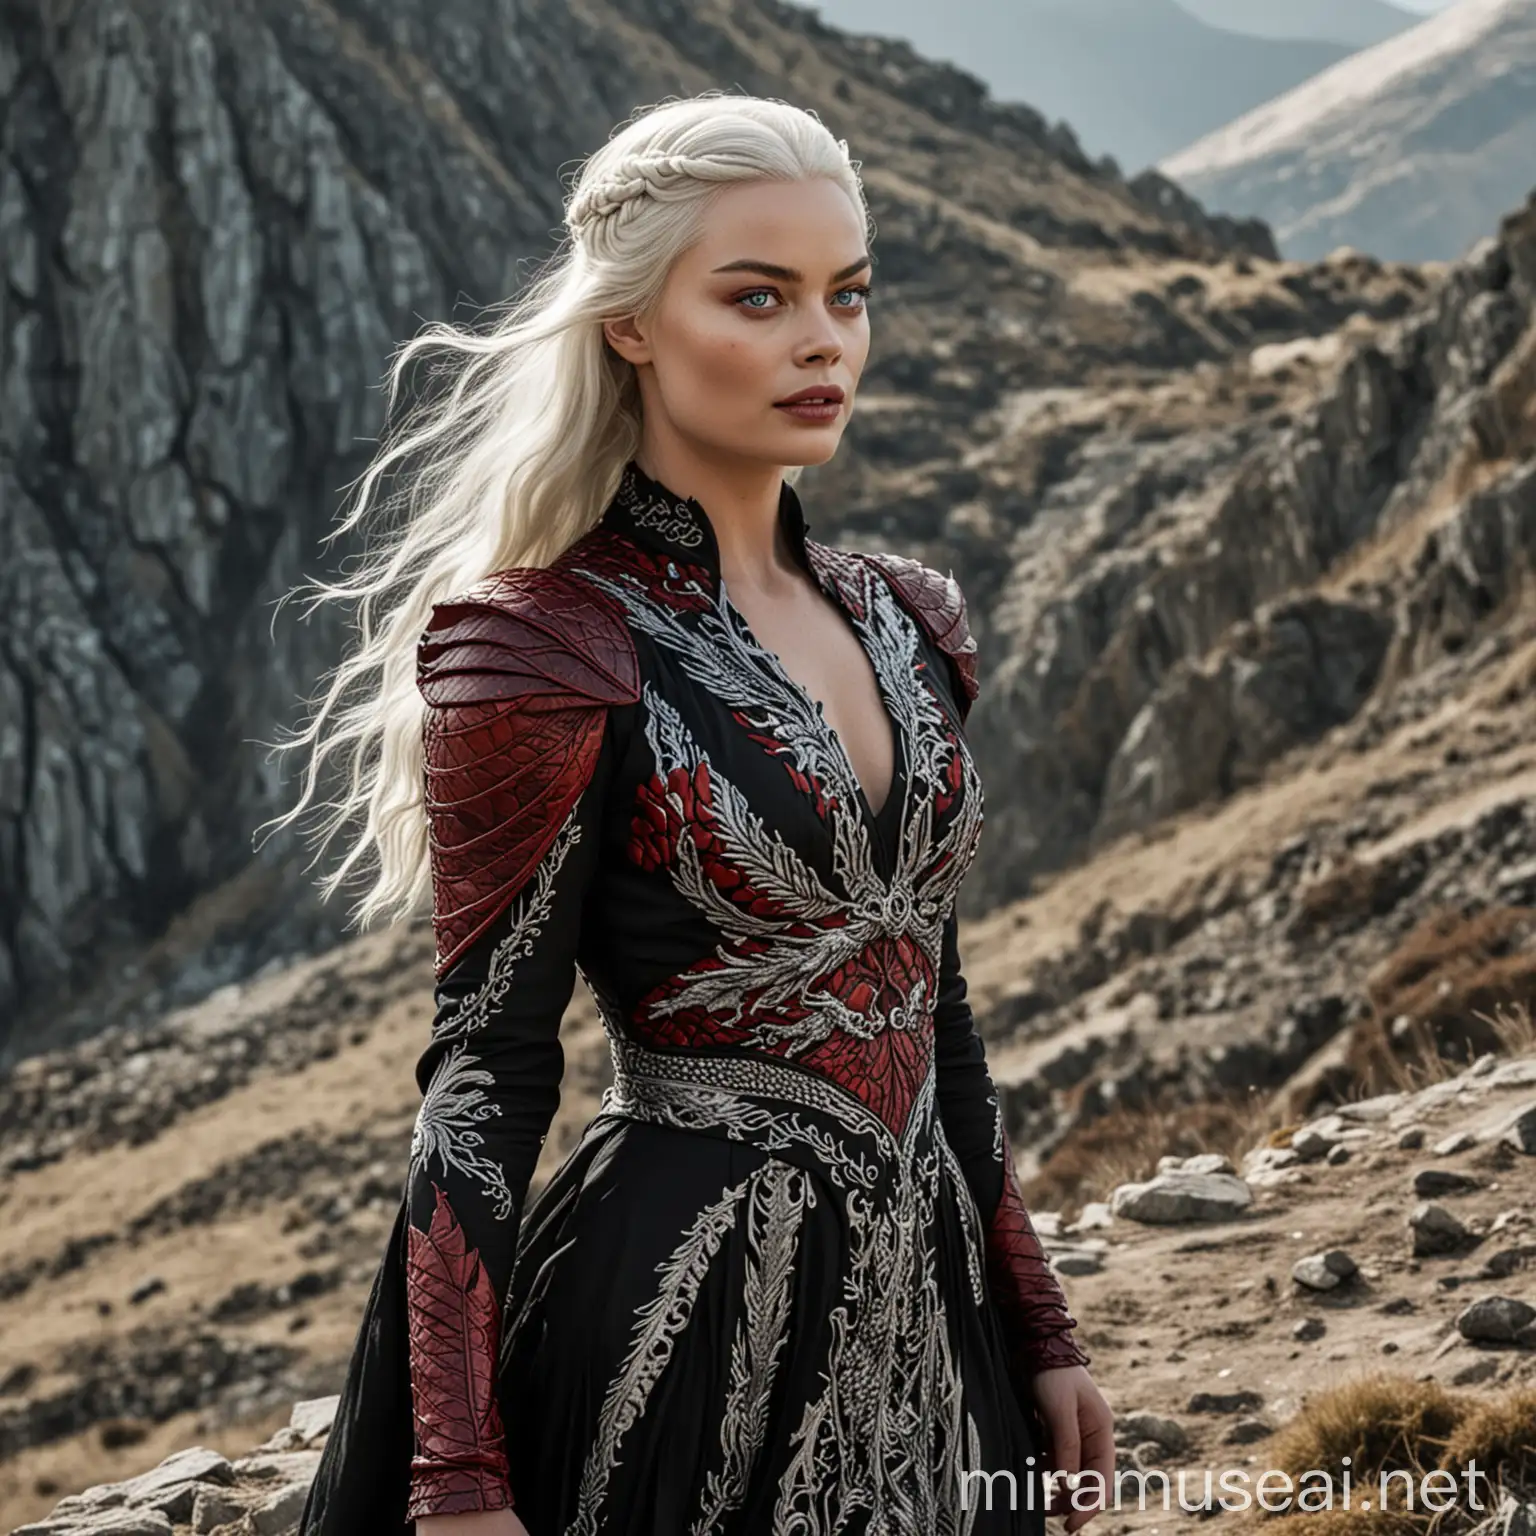 Margot Robbie en tant que princesse de la Maison Targaryen de l'Ancienne Valyria aux yeux clairs avec de longs cheveux blancs-argentés, portant une longue robe noire avec des motifs d'écailles de dragon rouges de part et d'autre, marchant sur une pente ensoleillée d'une montagne